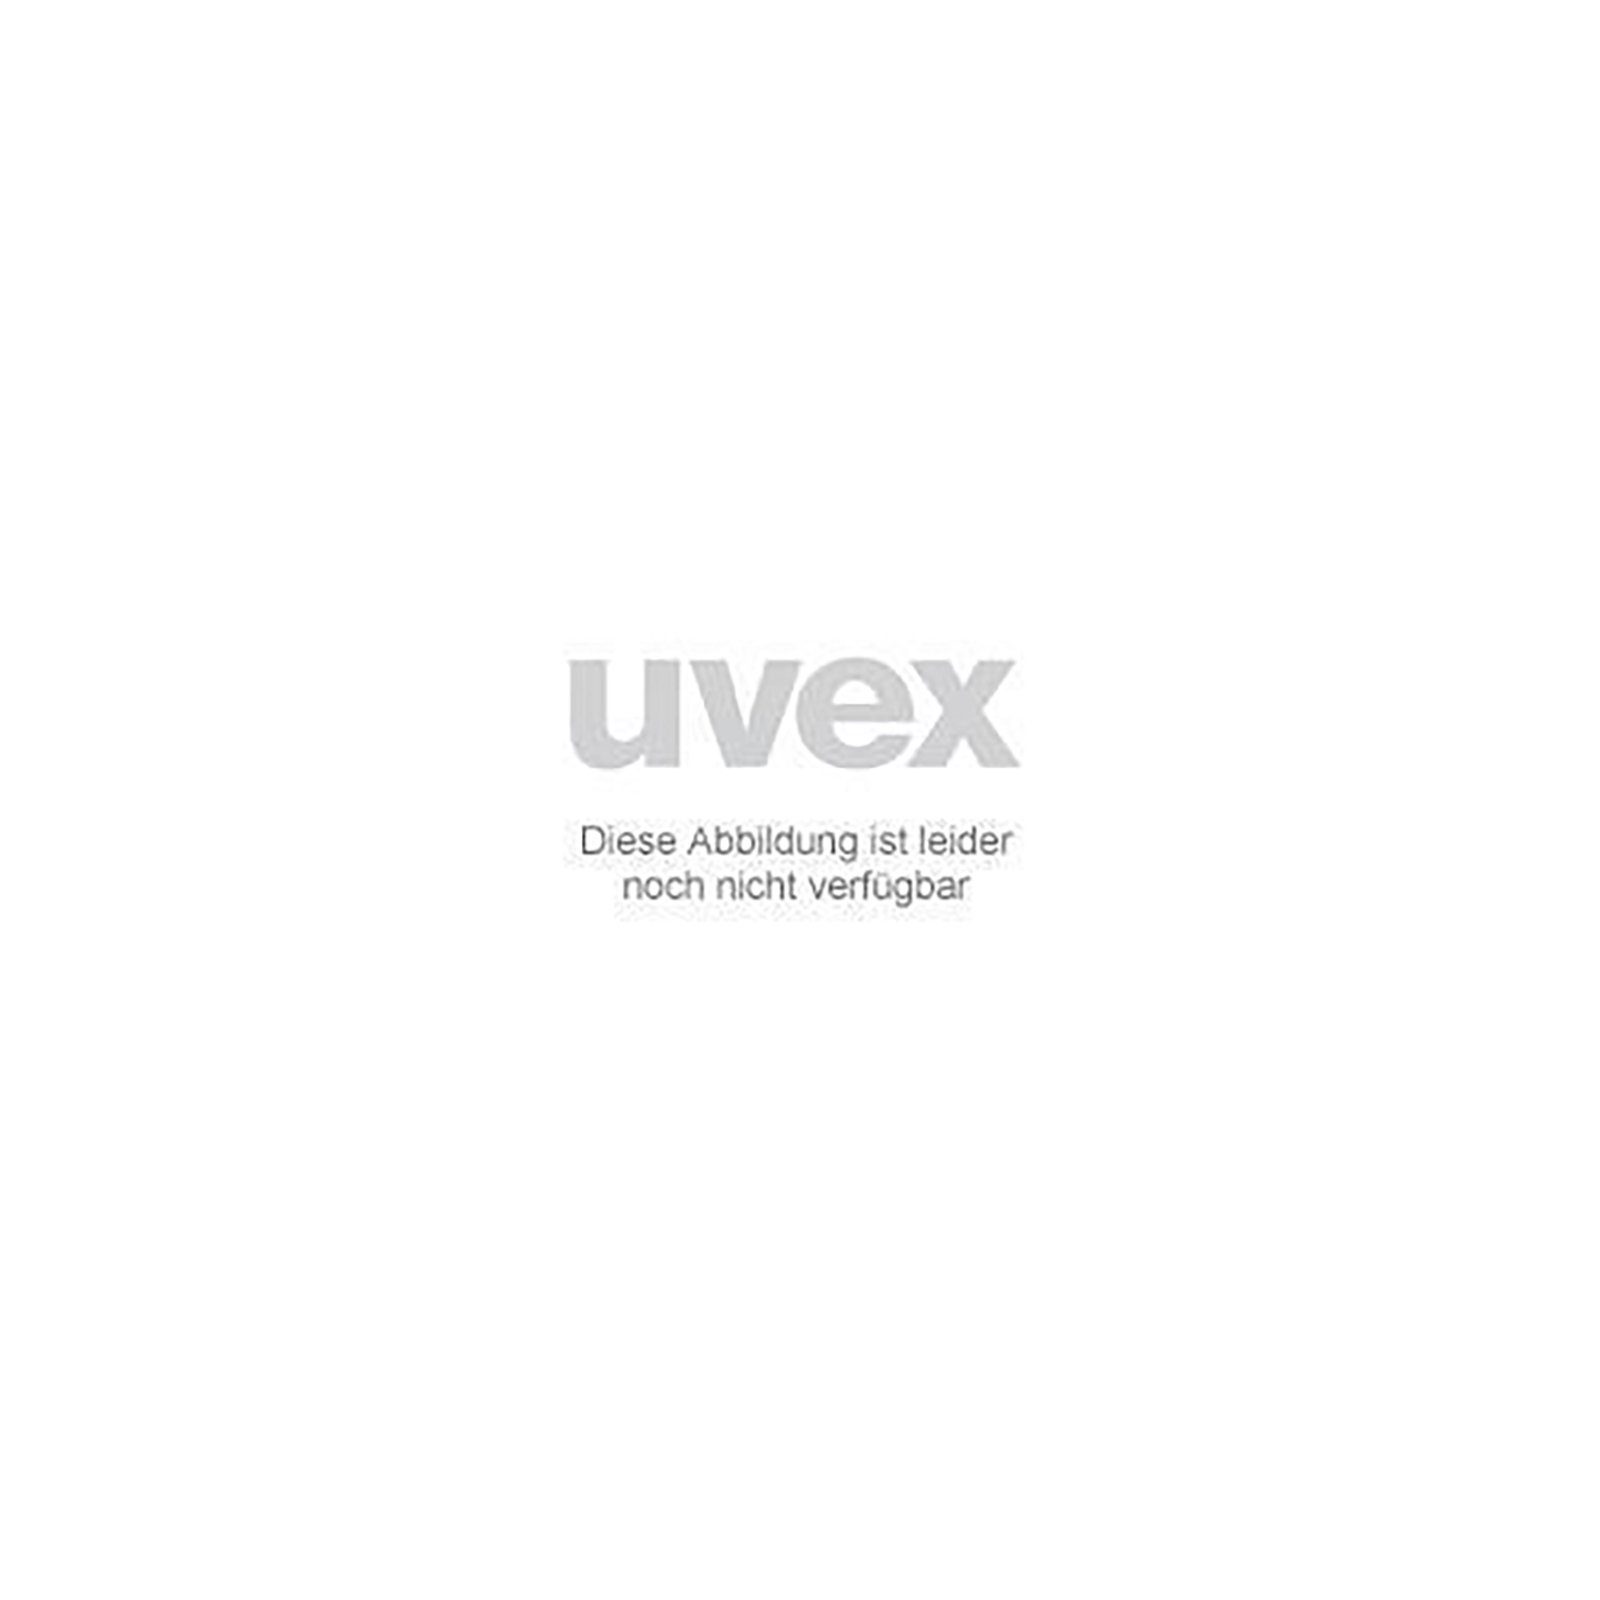 Uvex Arbeitsschutzbrille Ersatzscheibe 4 9104084 grau Schweißerschutz